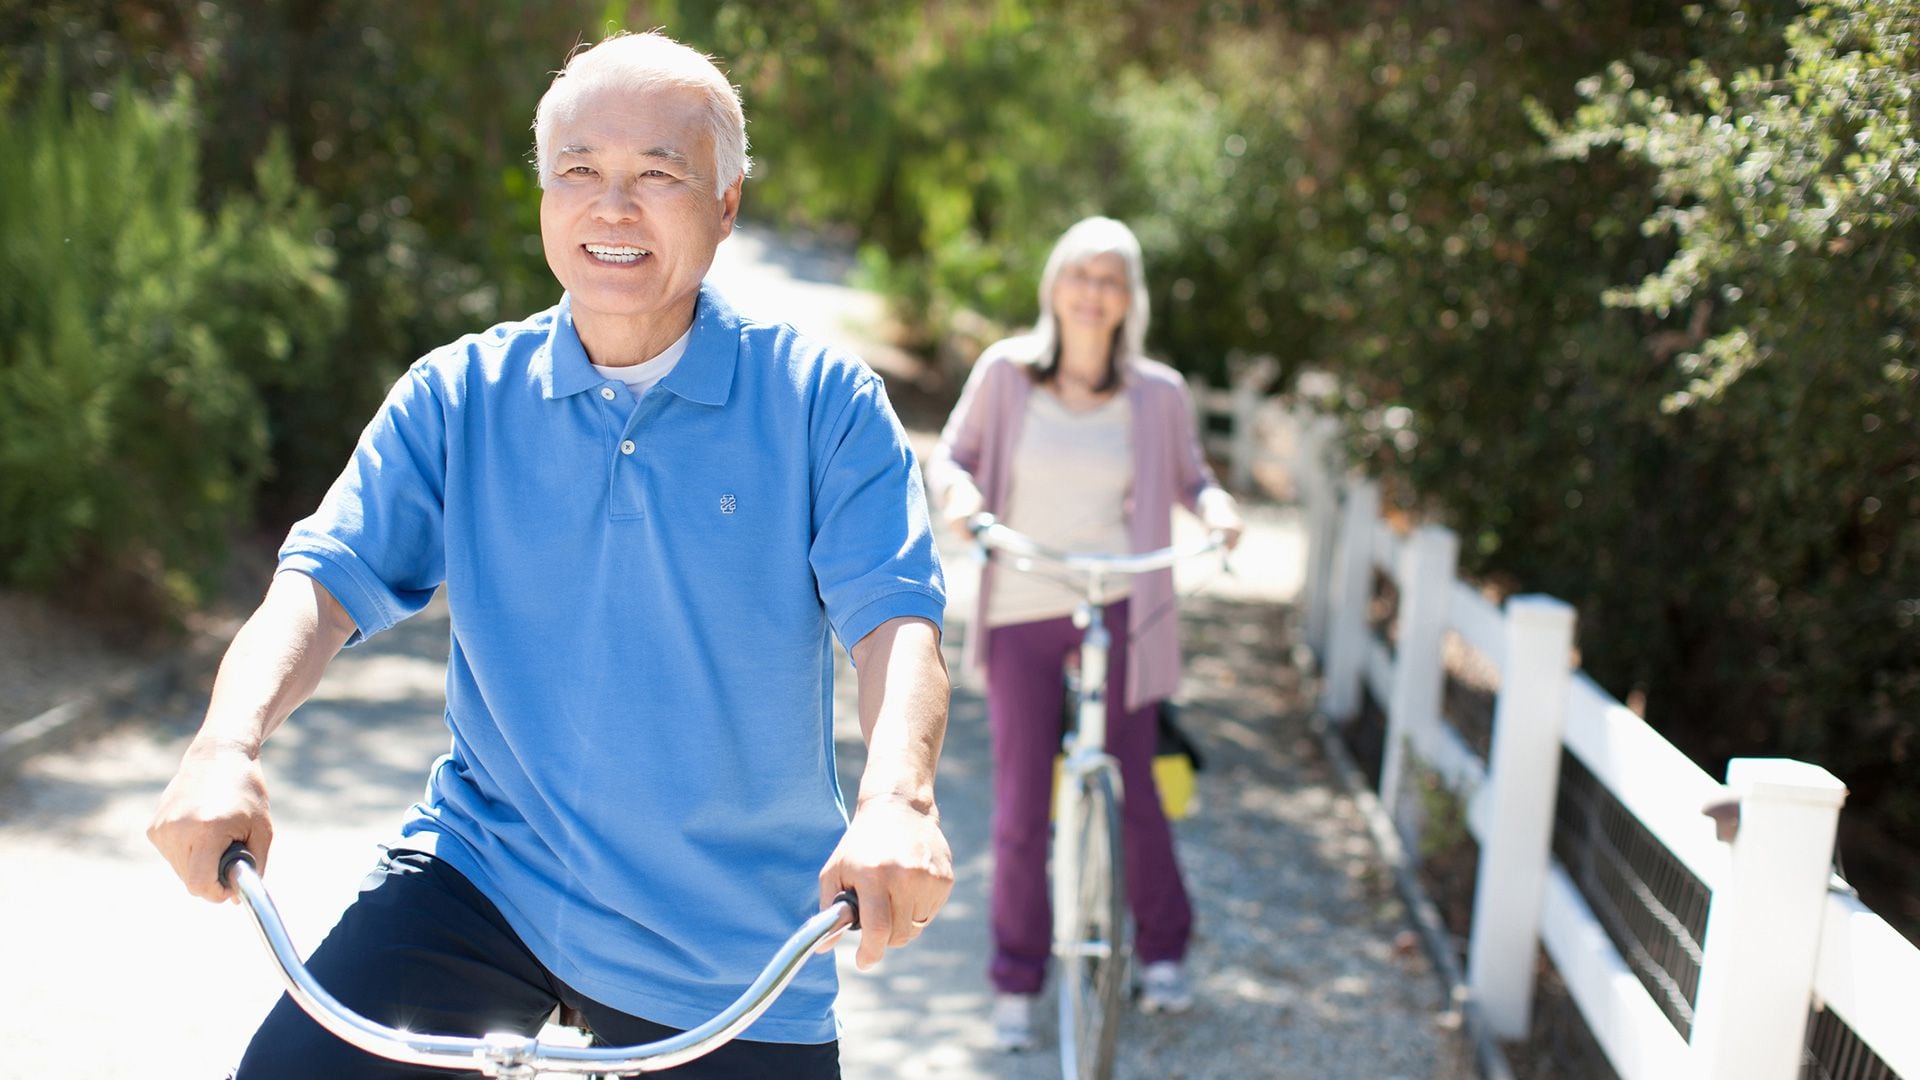 Las personas mayores de 70 años tienen requisitos específicos de vitamina D, con una recomendación diaria de 800 unidades internacionales para mantener una salud óptima
Getty